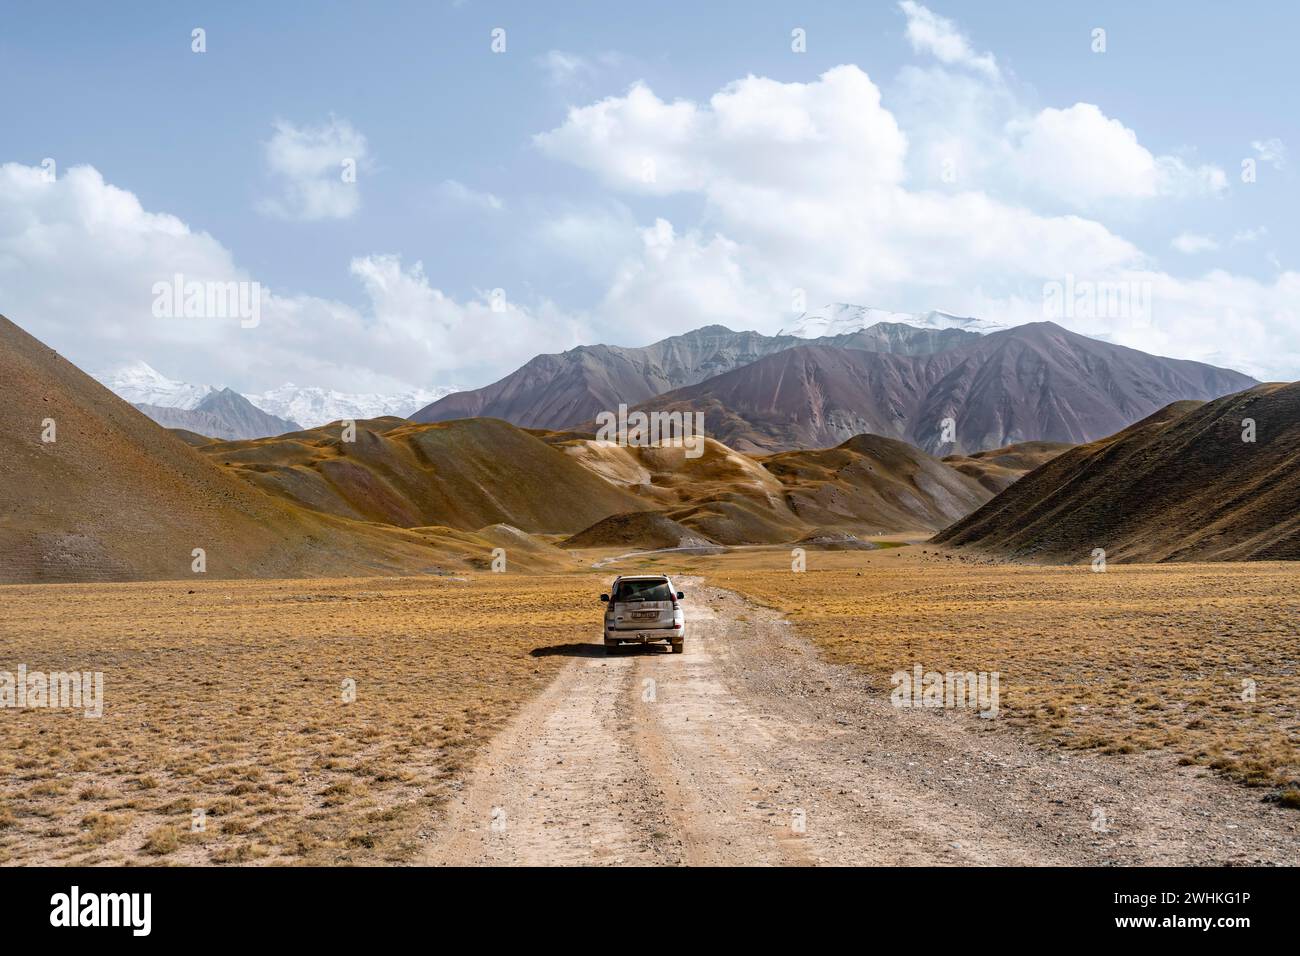 Naturtourismus, Roadtrip, Overlander, Geländewagen auf einer Schotterstraße im Pamir-Gebirge, Provinz Osh, Kirgisistan Stockfoto